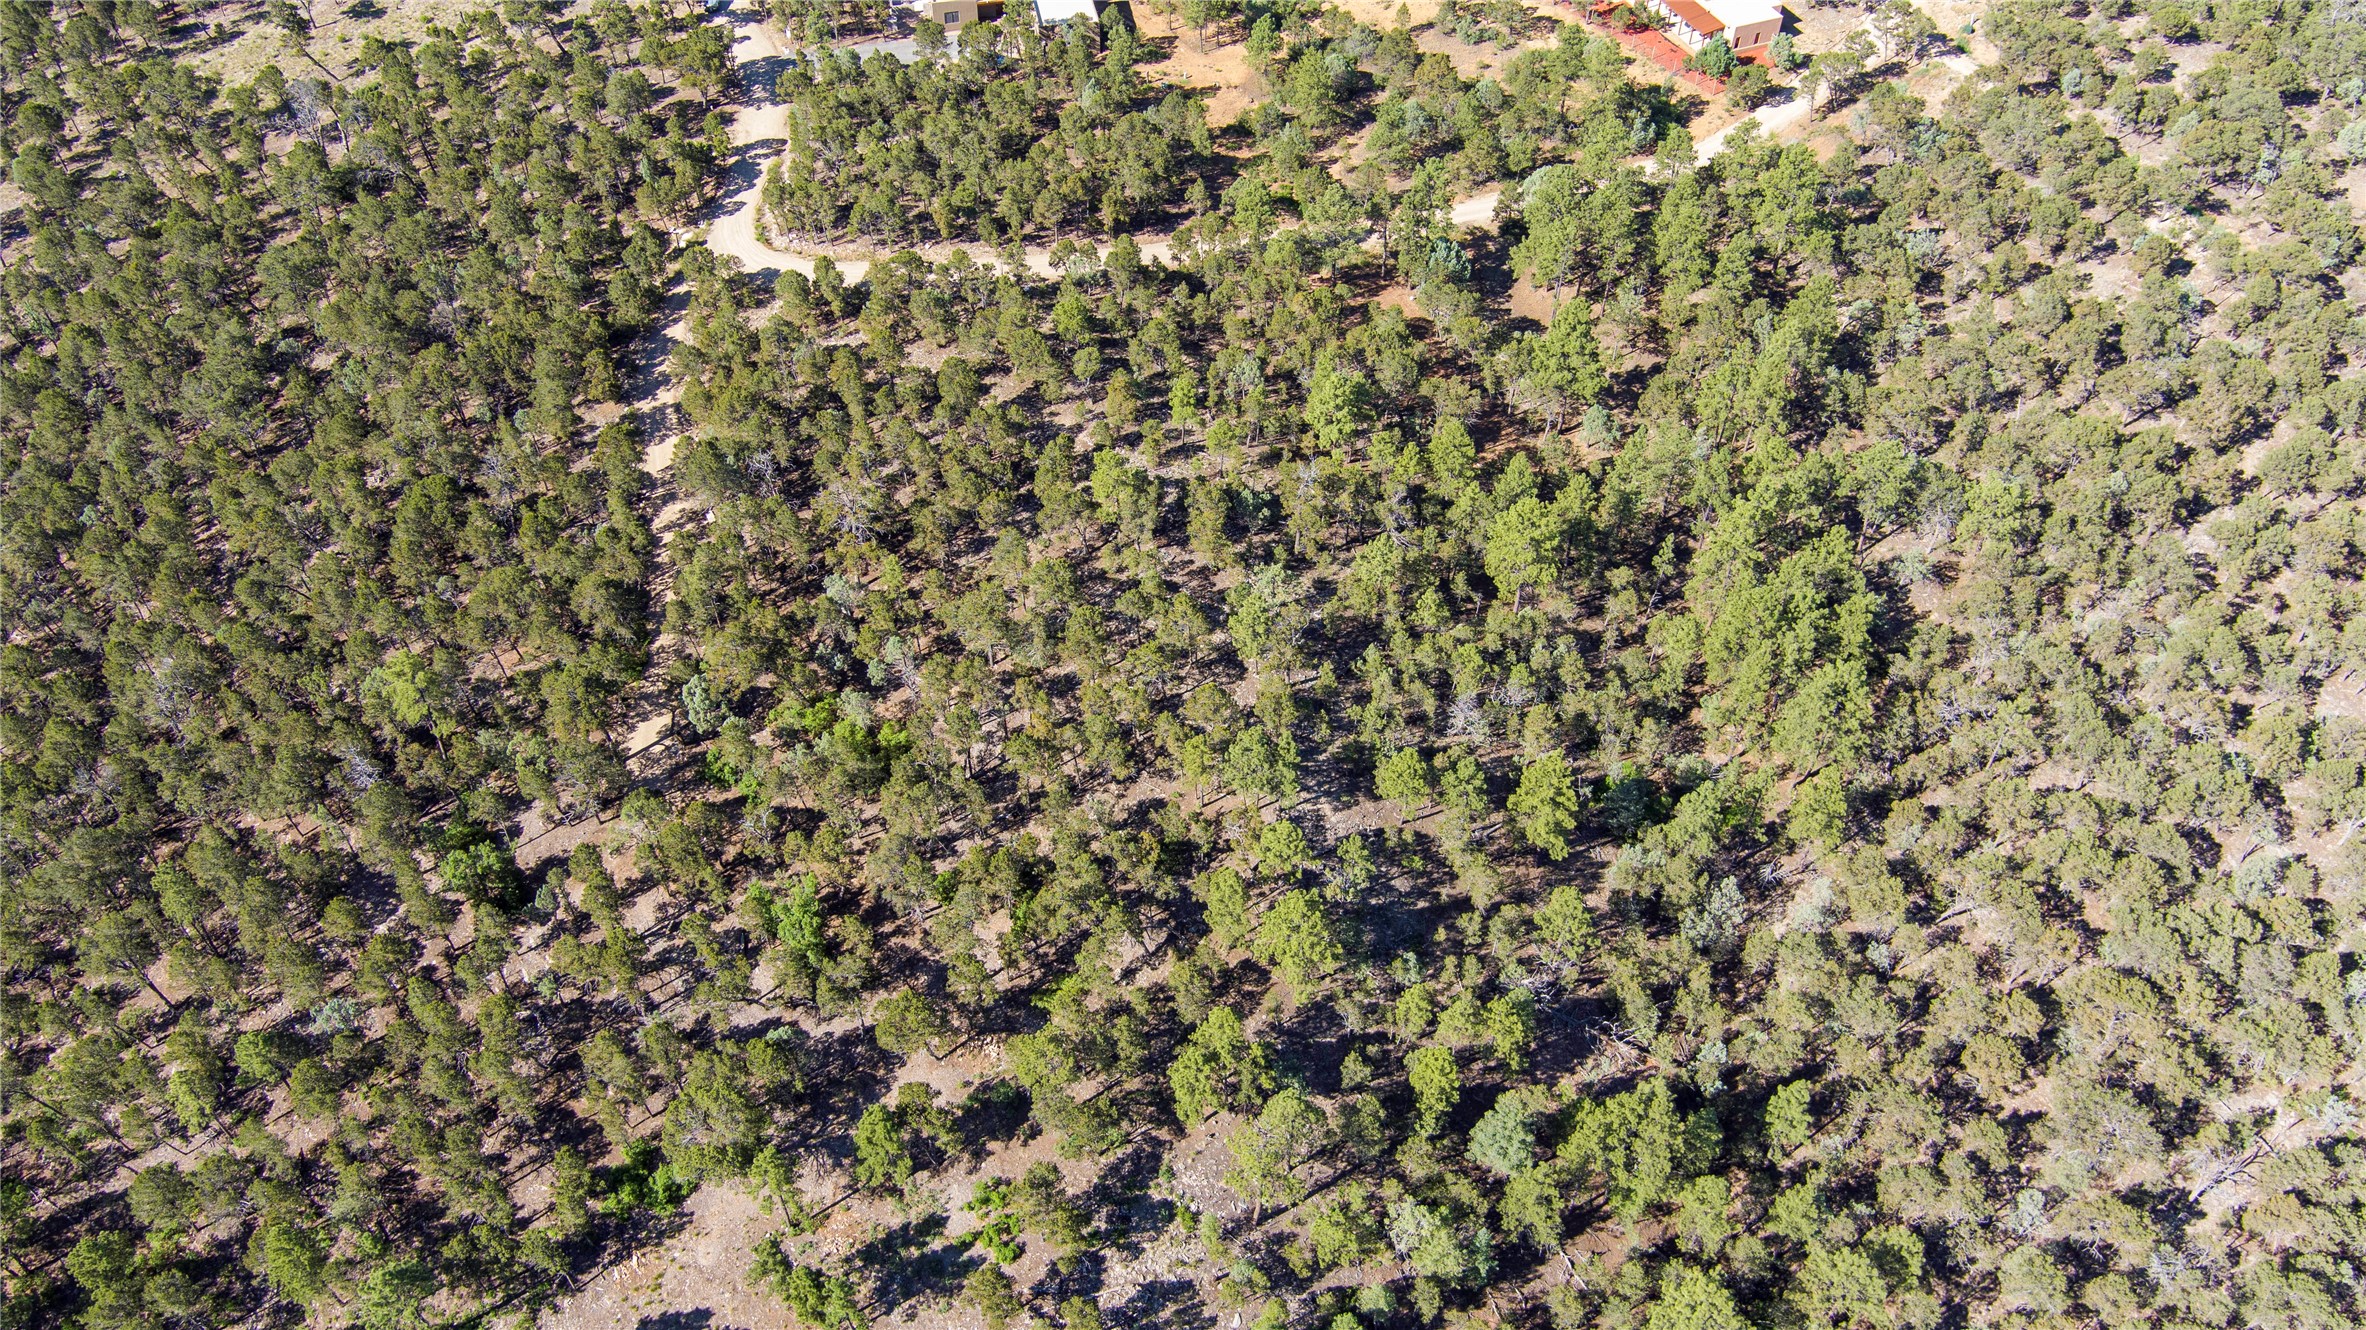 Aerial view of driveway & Los Nidos at top of photo